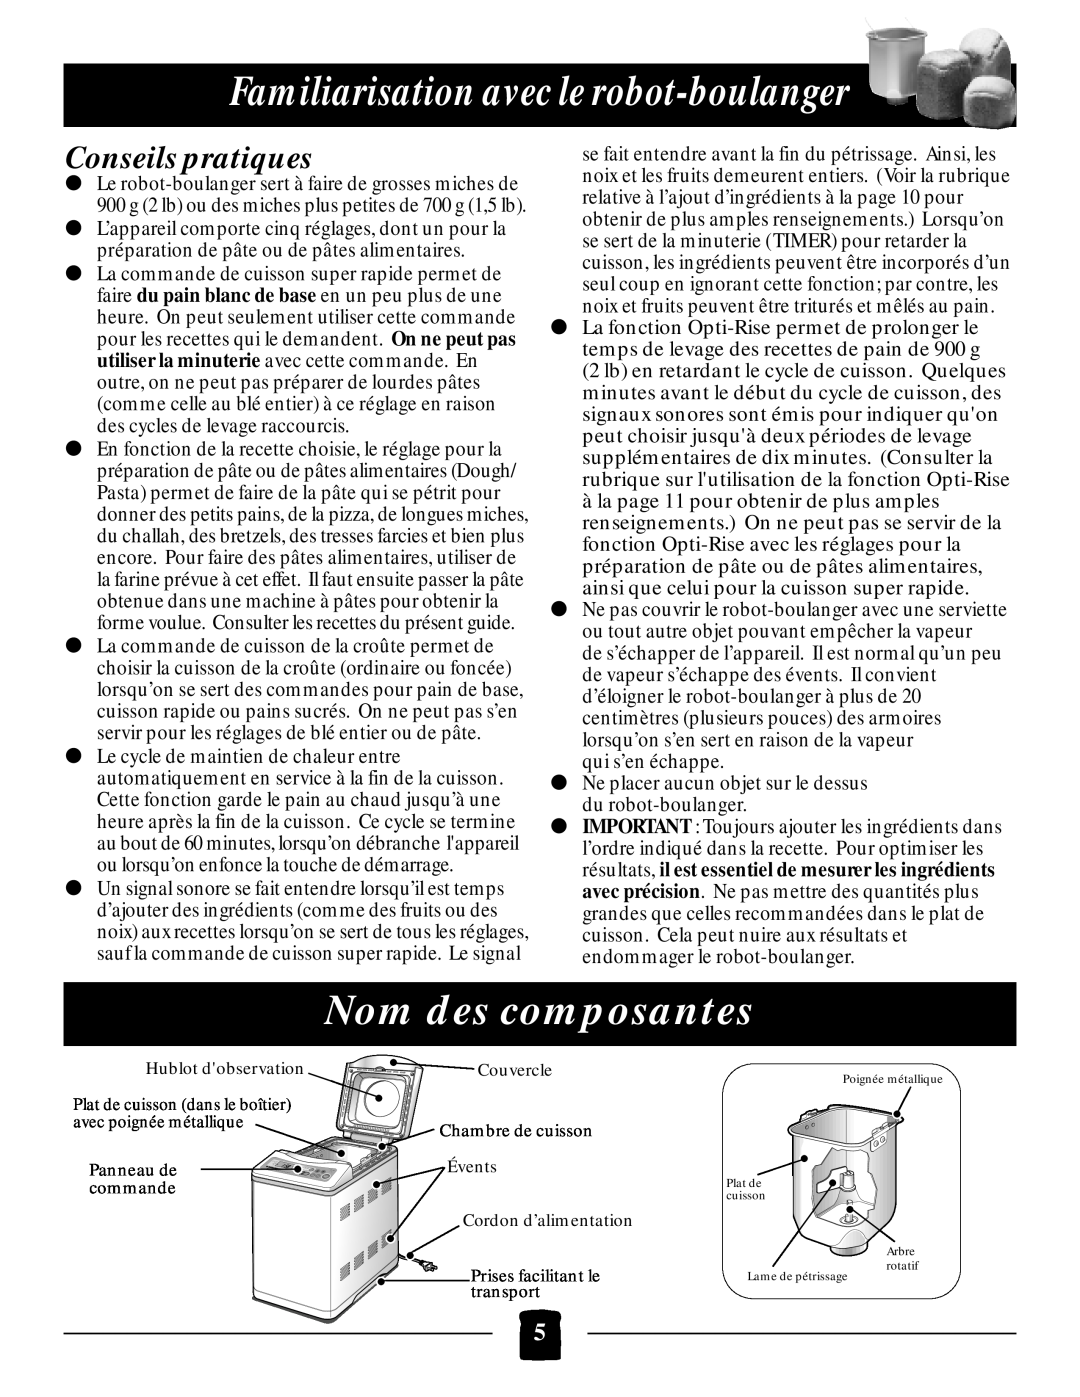 Black & Decker B1650 manual Familiarisation avec le robot-boulanger, Nom des composantes, Conseils pratiques 